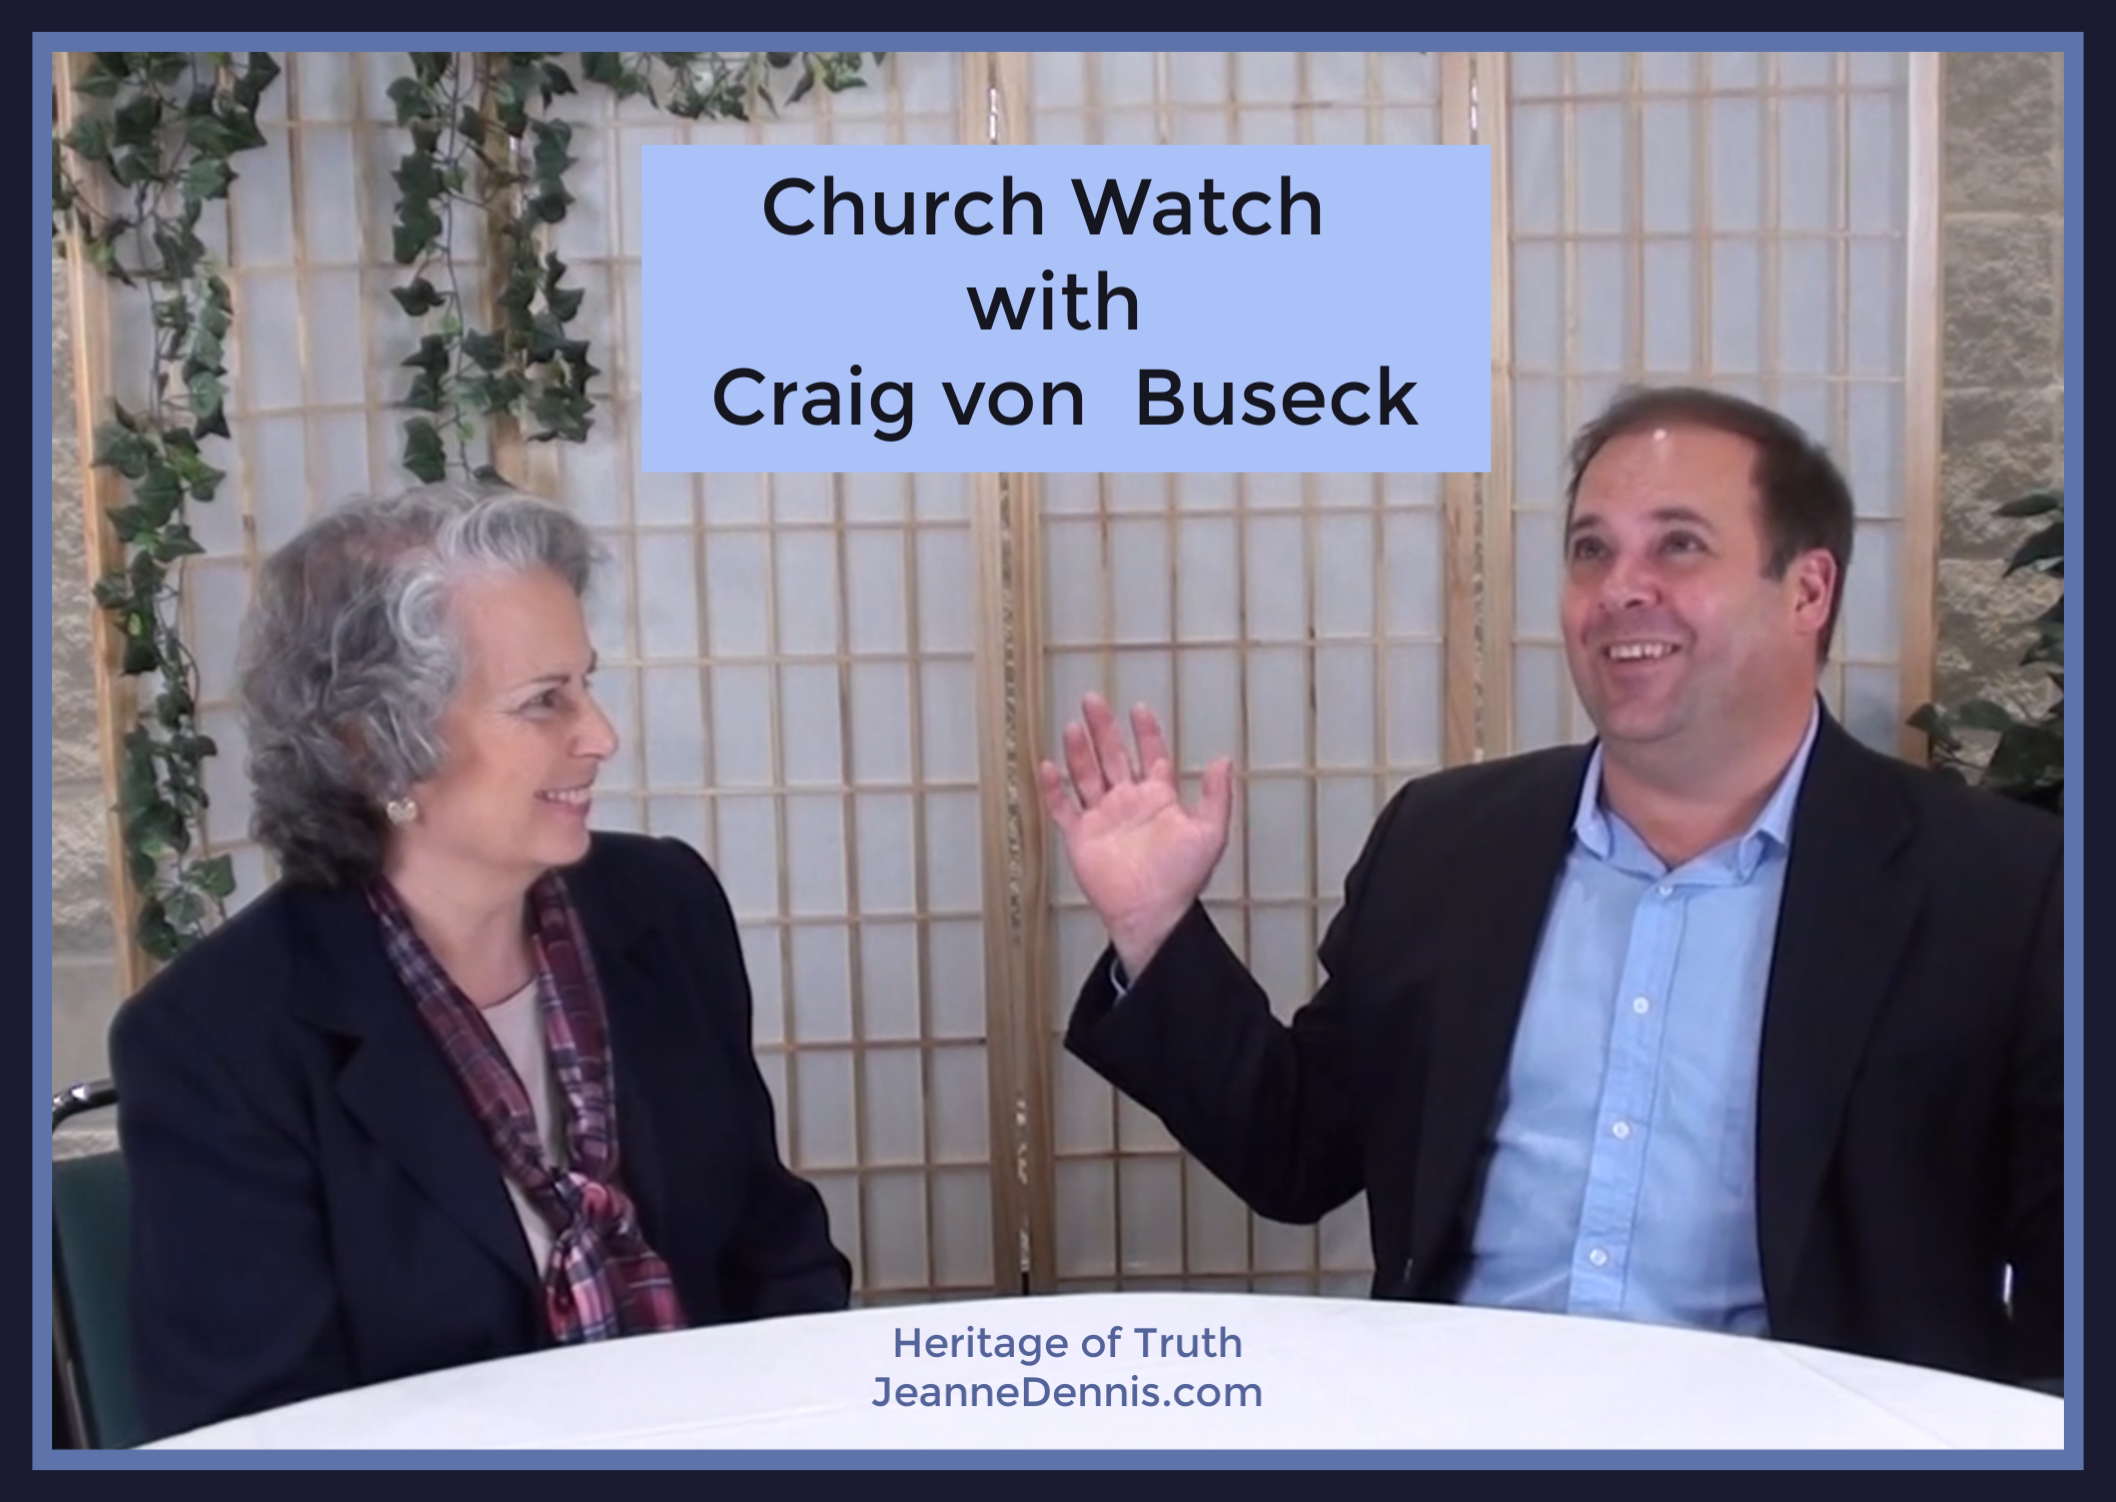 Craig von Buseck Church Watch, Heritage of Truth, JeanneDennis.com